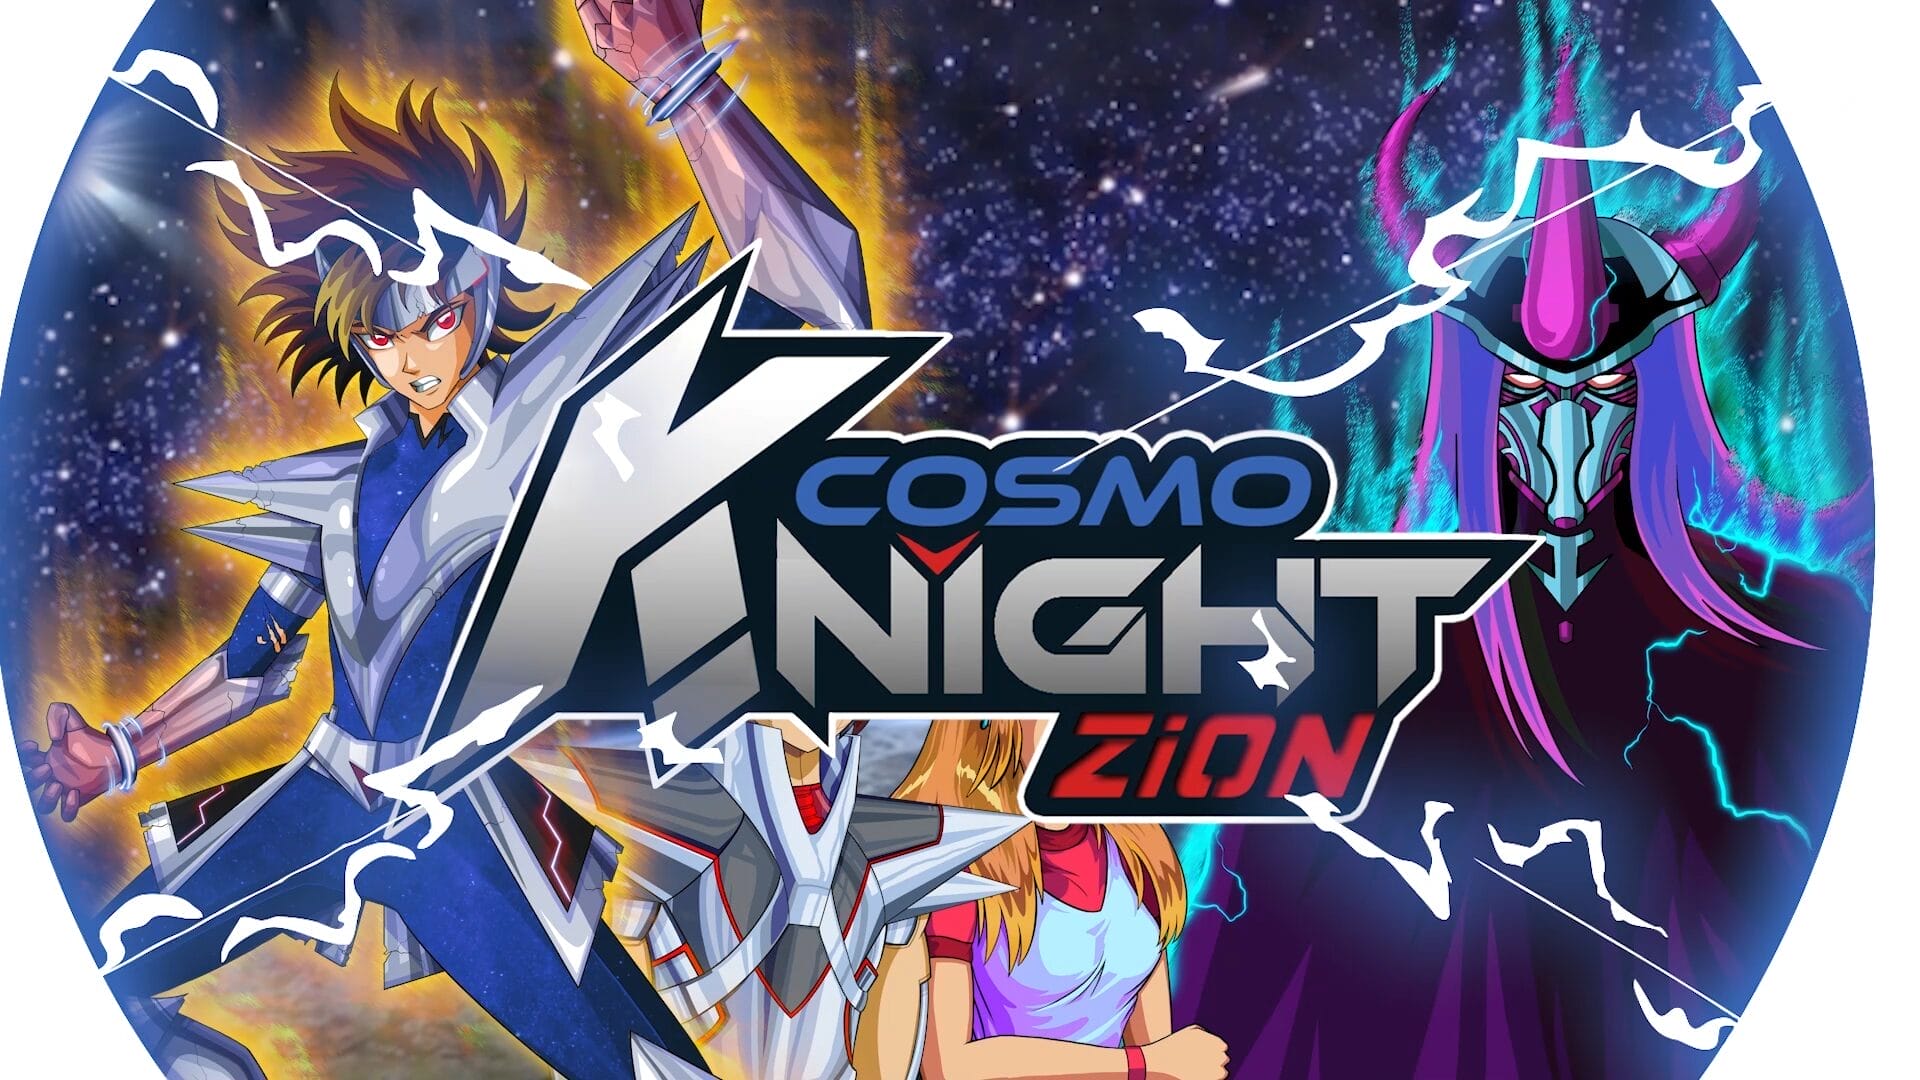 Cosmo Knight Zion